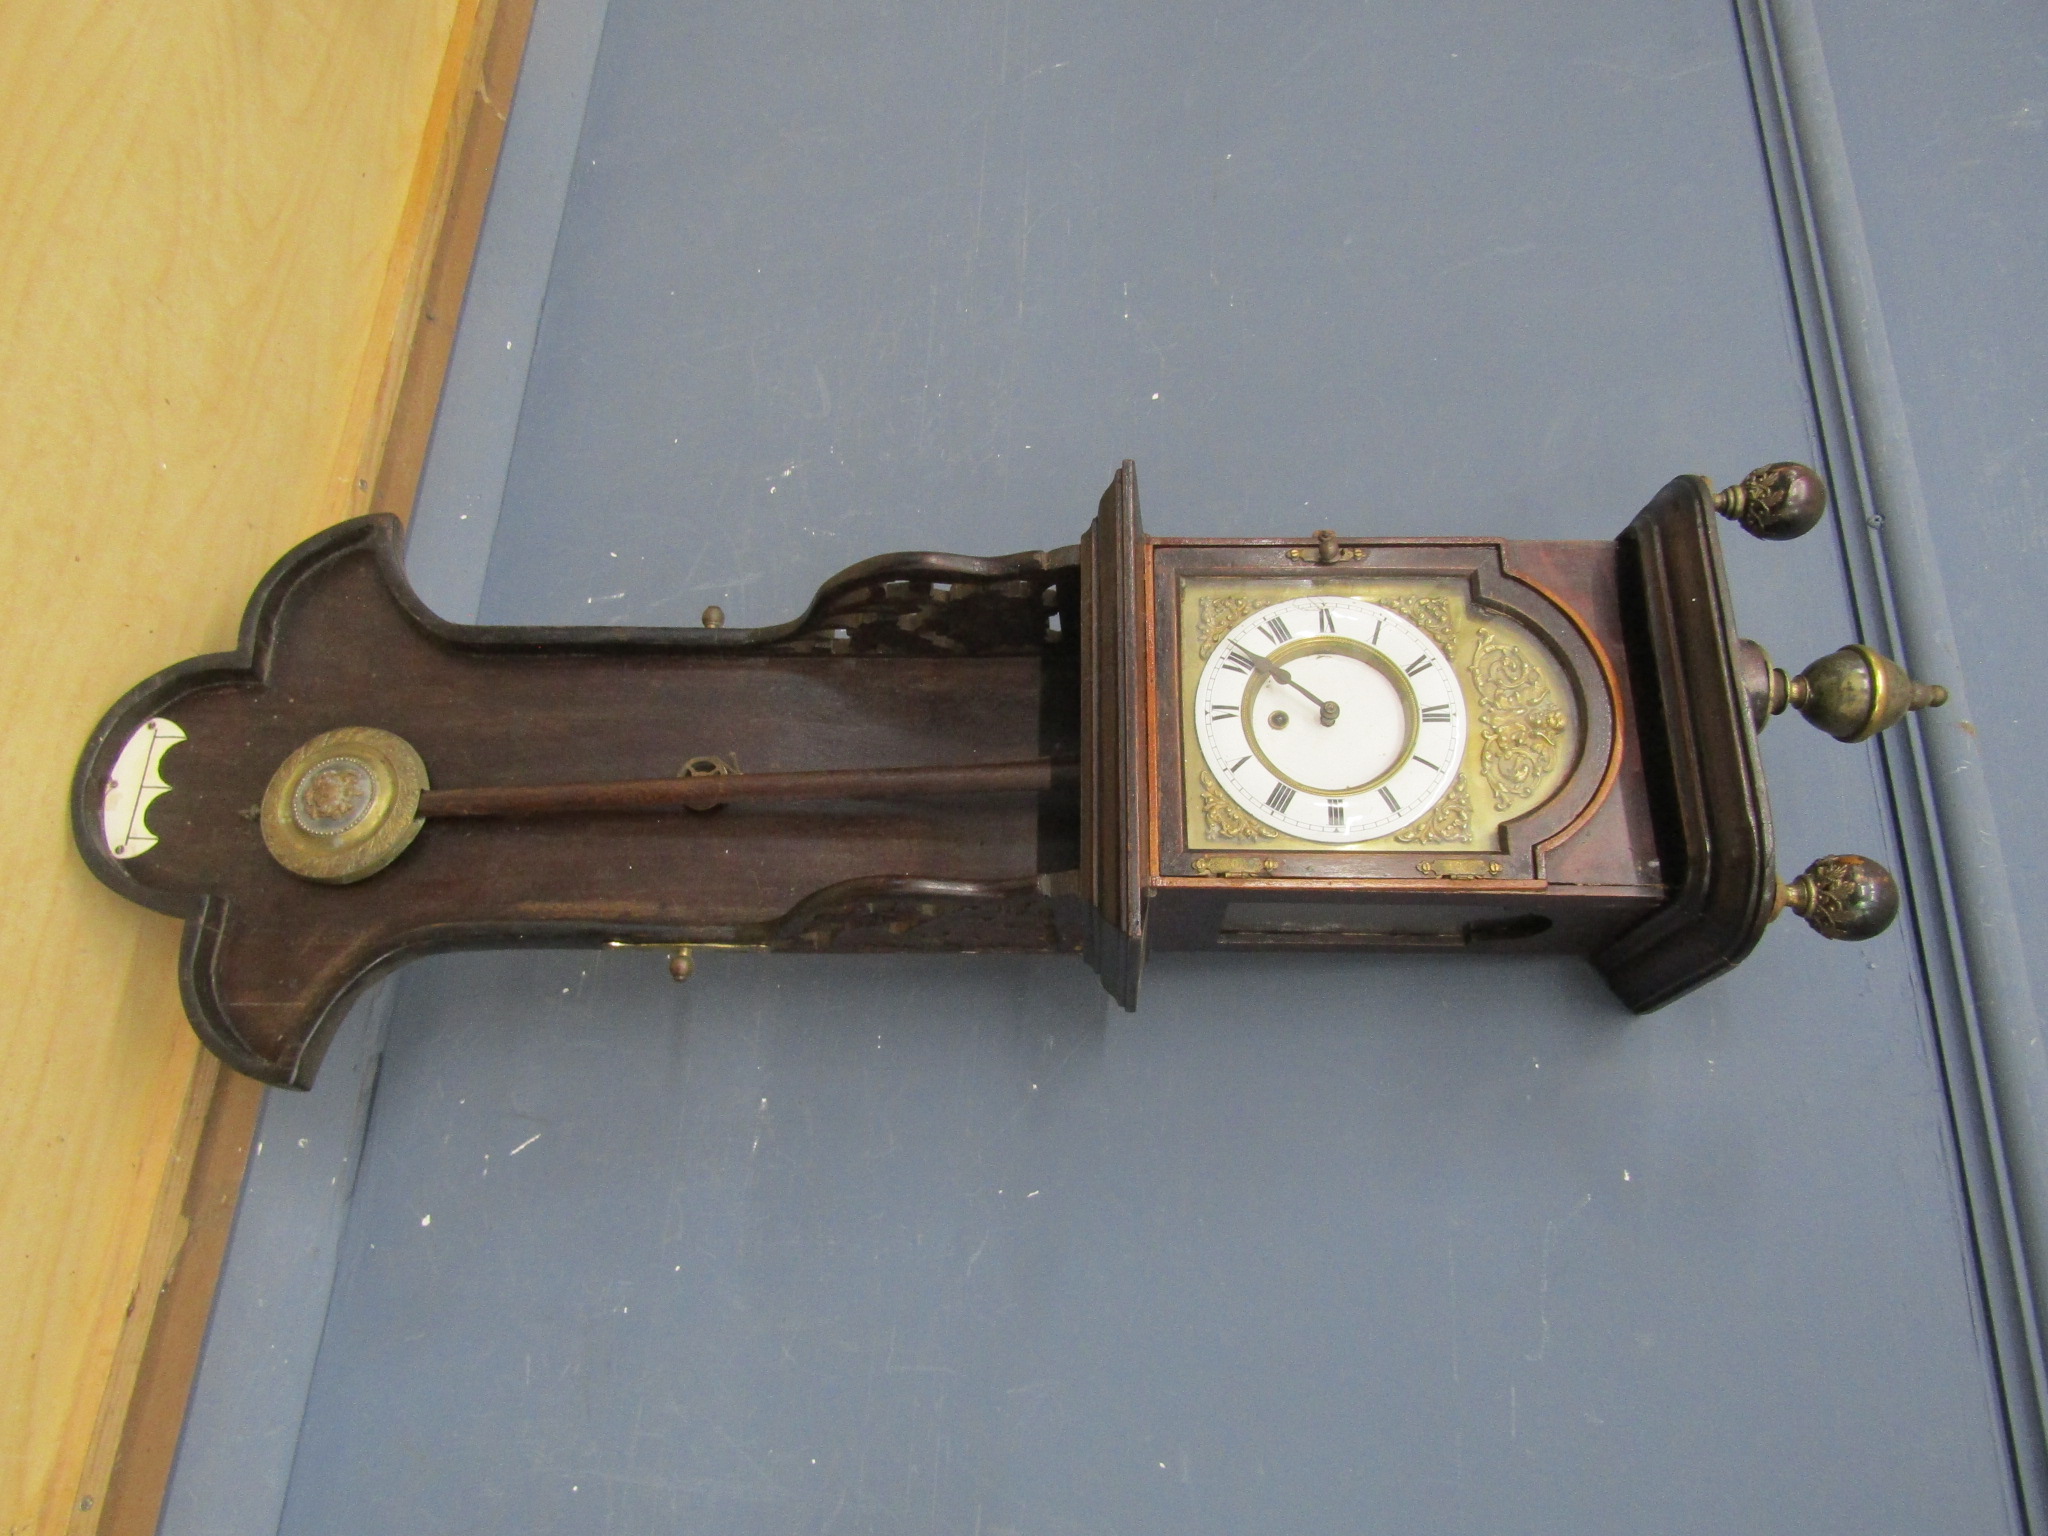 19th Century German Gustav Becker? mahogany cased regulator wall clock (some restoration needed as